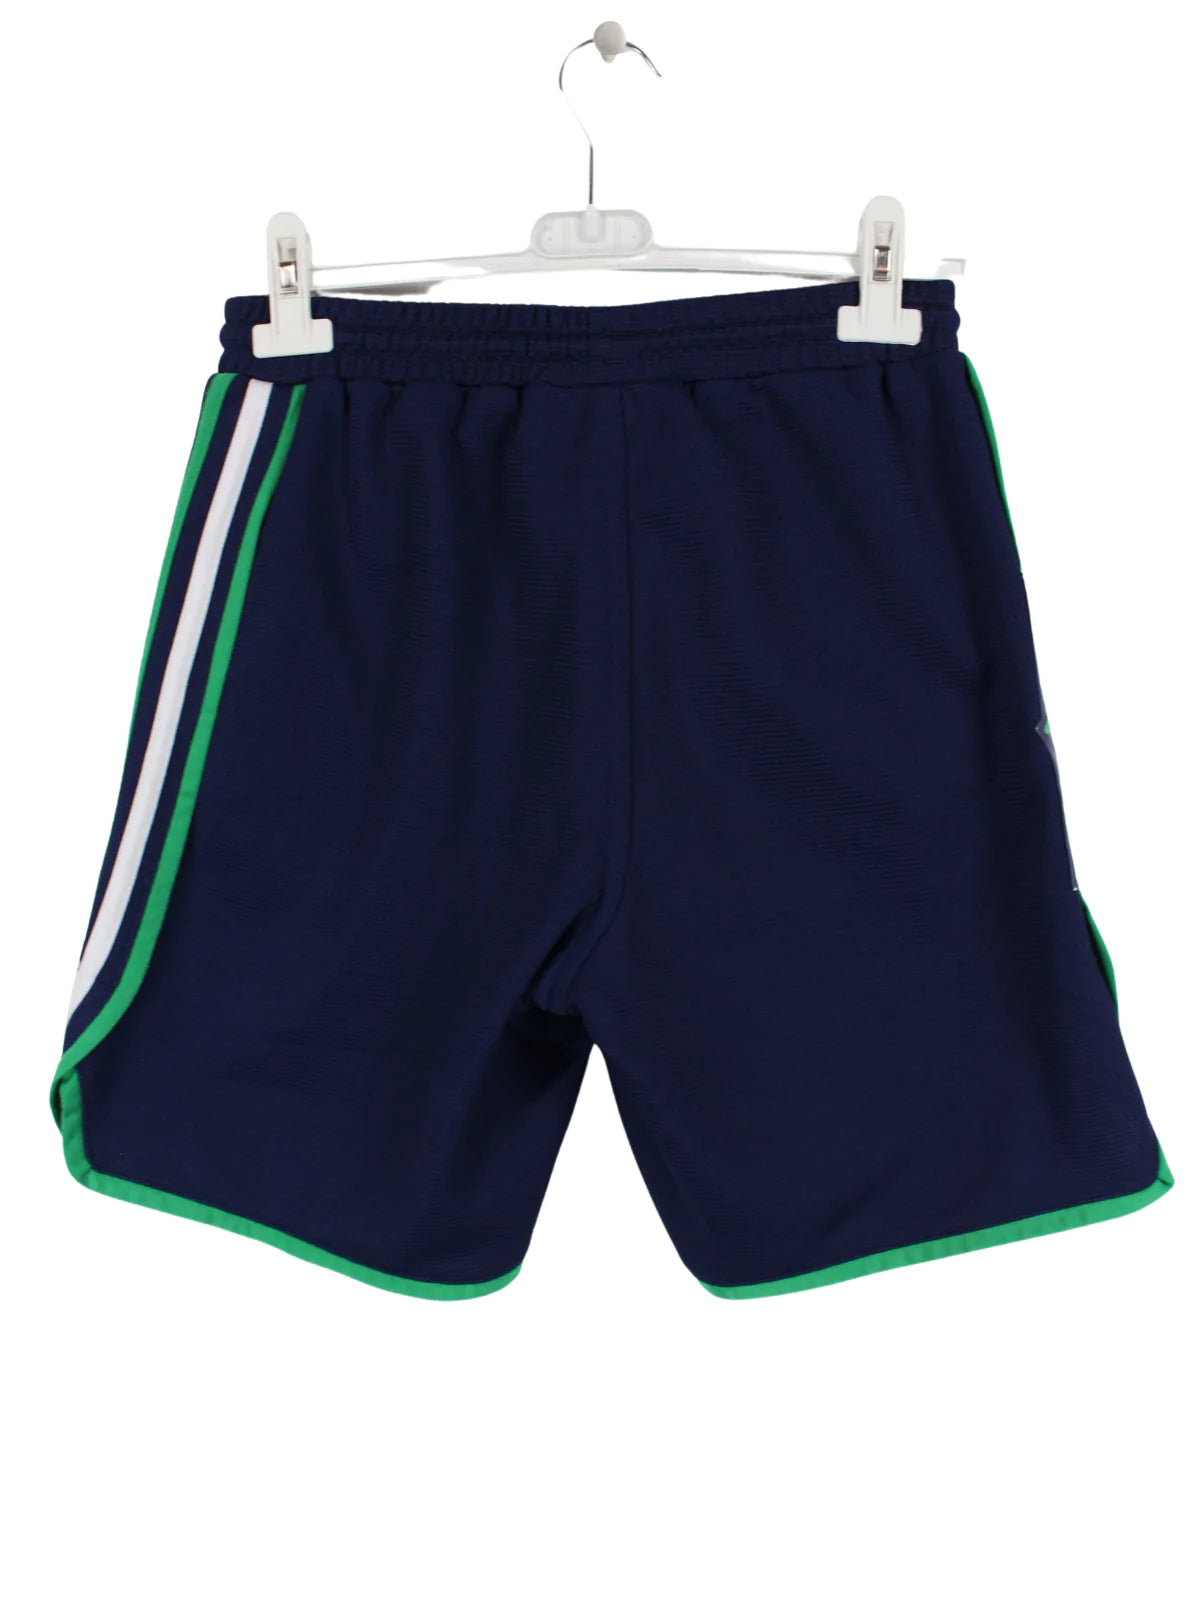 Adidas Sport Shorts Blau S